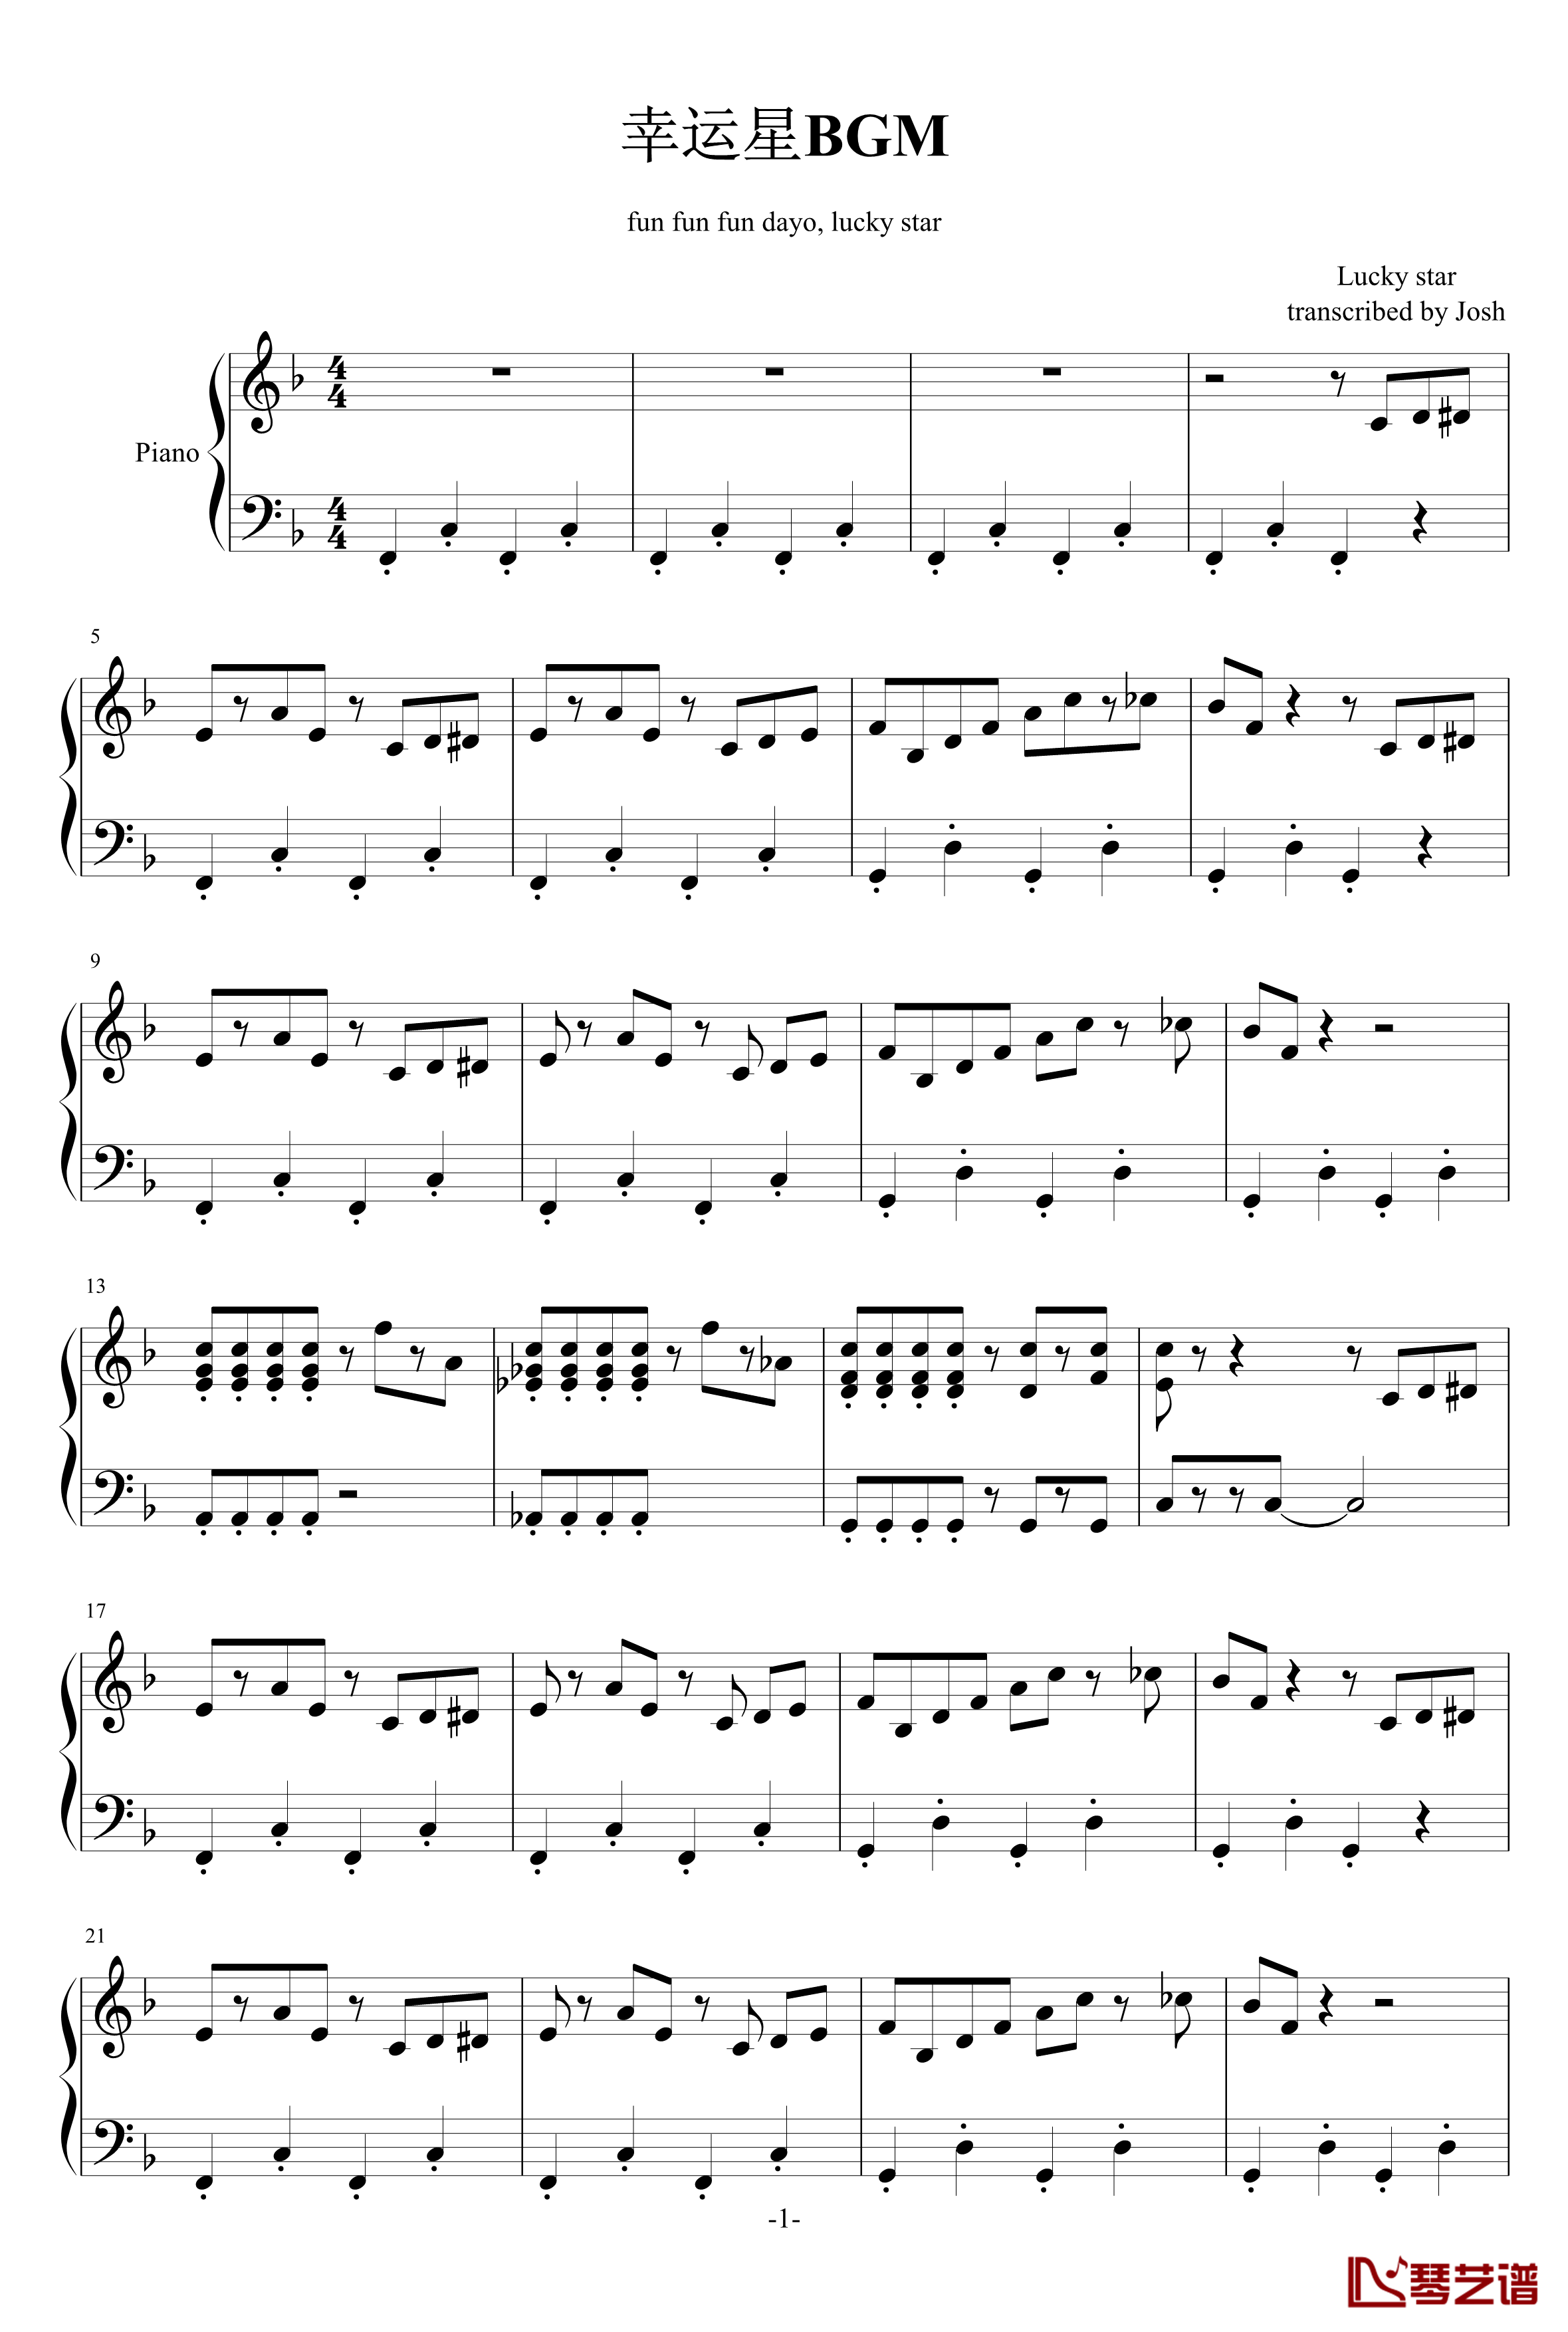 幸运星BGM钢琴谱-欢乐-幸运星1